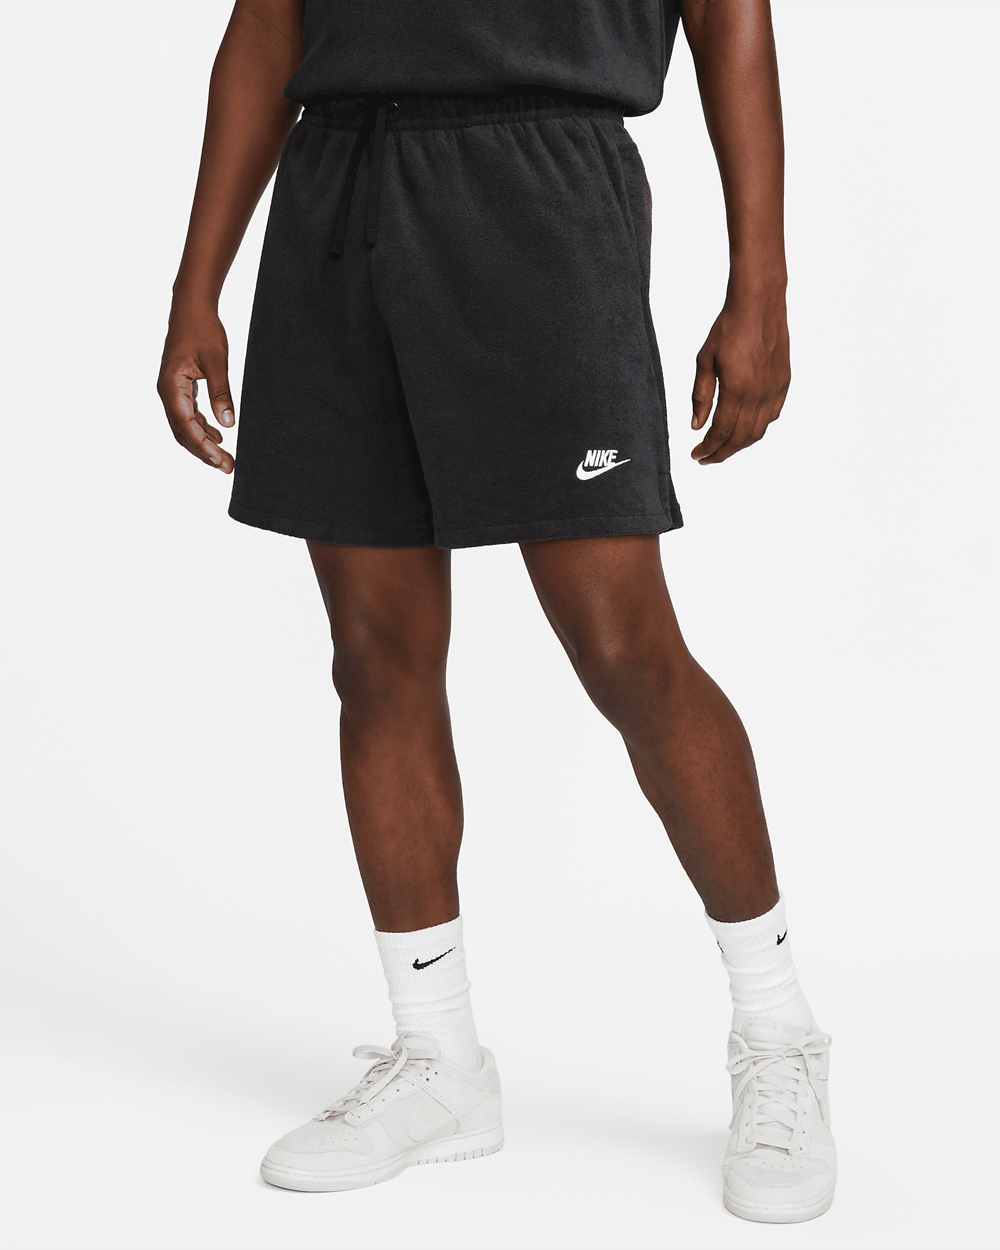 Nike-Club-Fleece-Terry-Flow-Shorts-Black-White